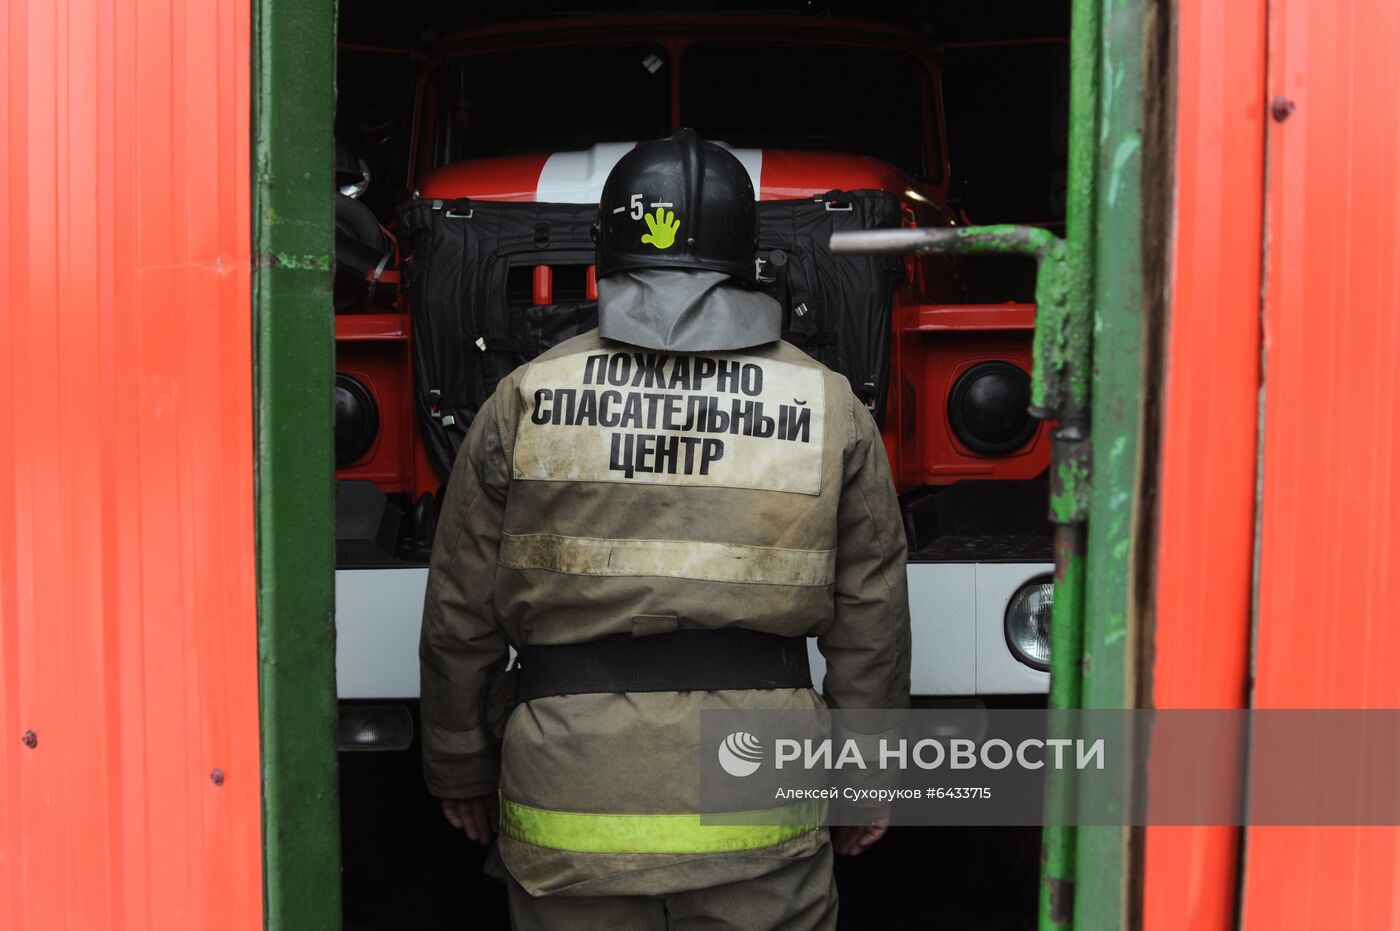 Работа пожарно - спасательного центра в Тамбове 